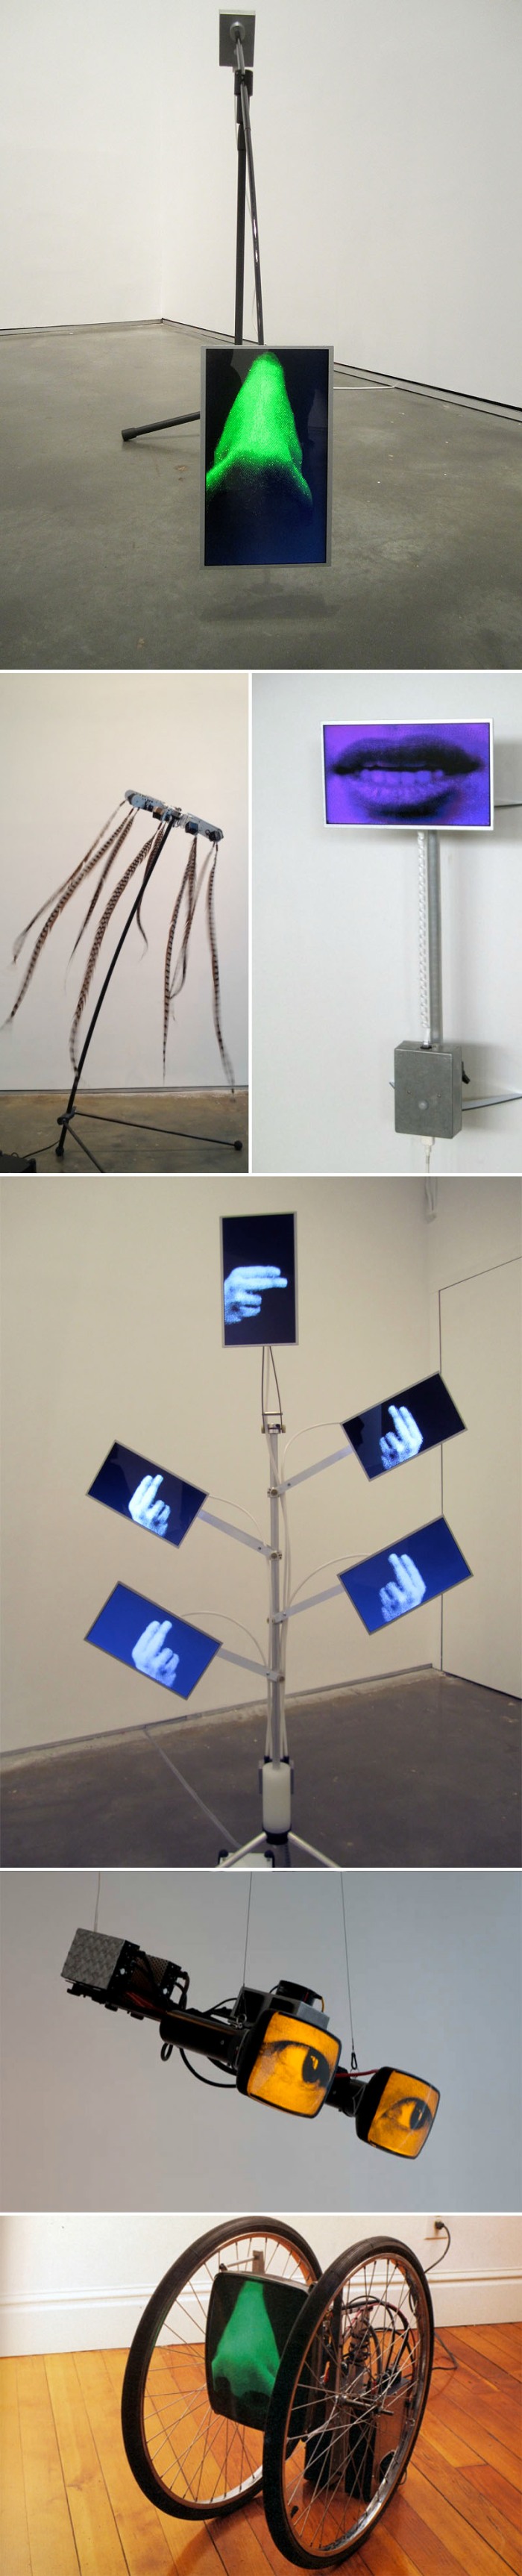 Digital Video Sculptures, interactive art, Alan Rath, Techy Art, Anatomy, cool art